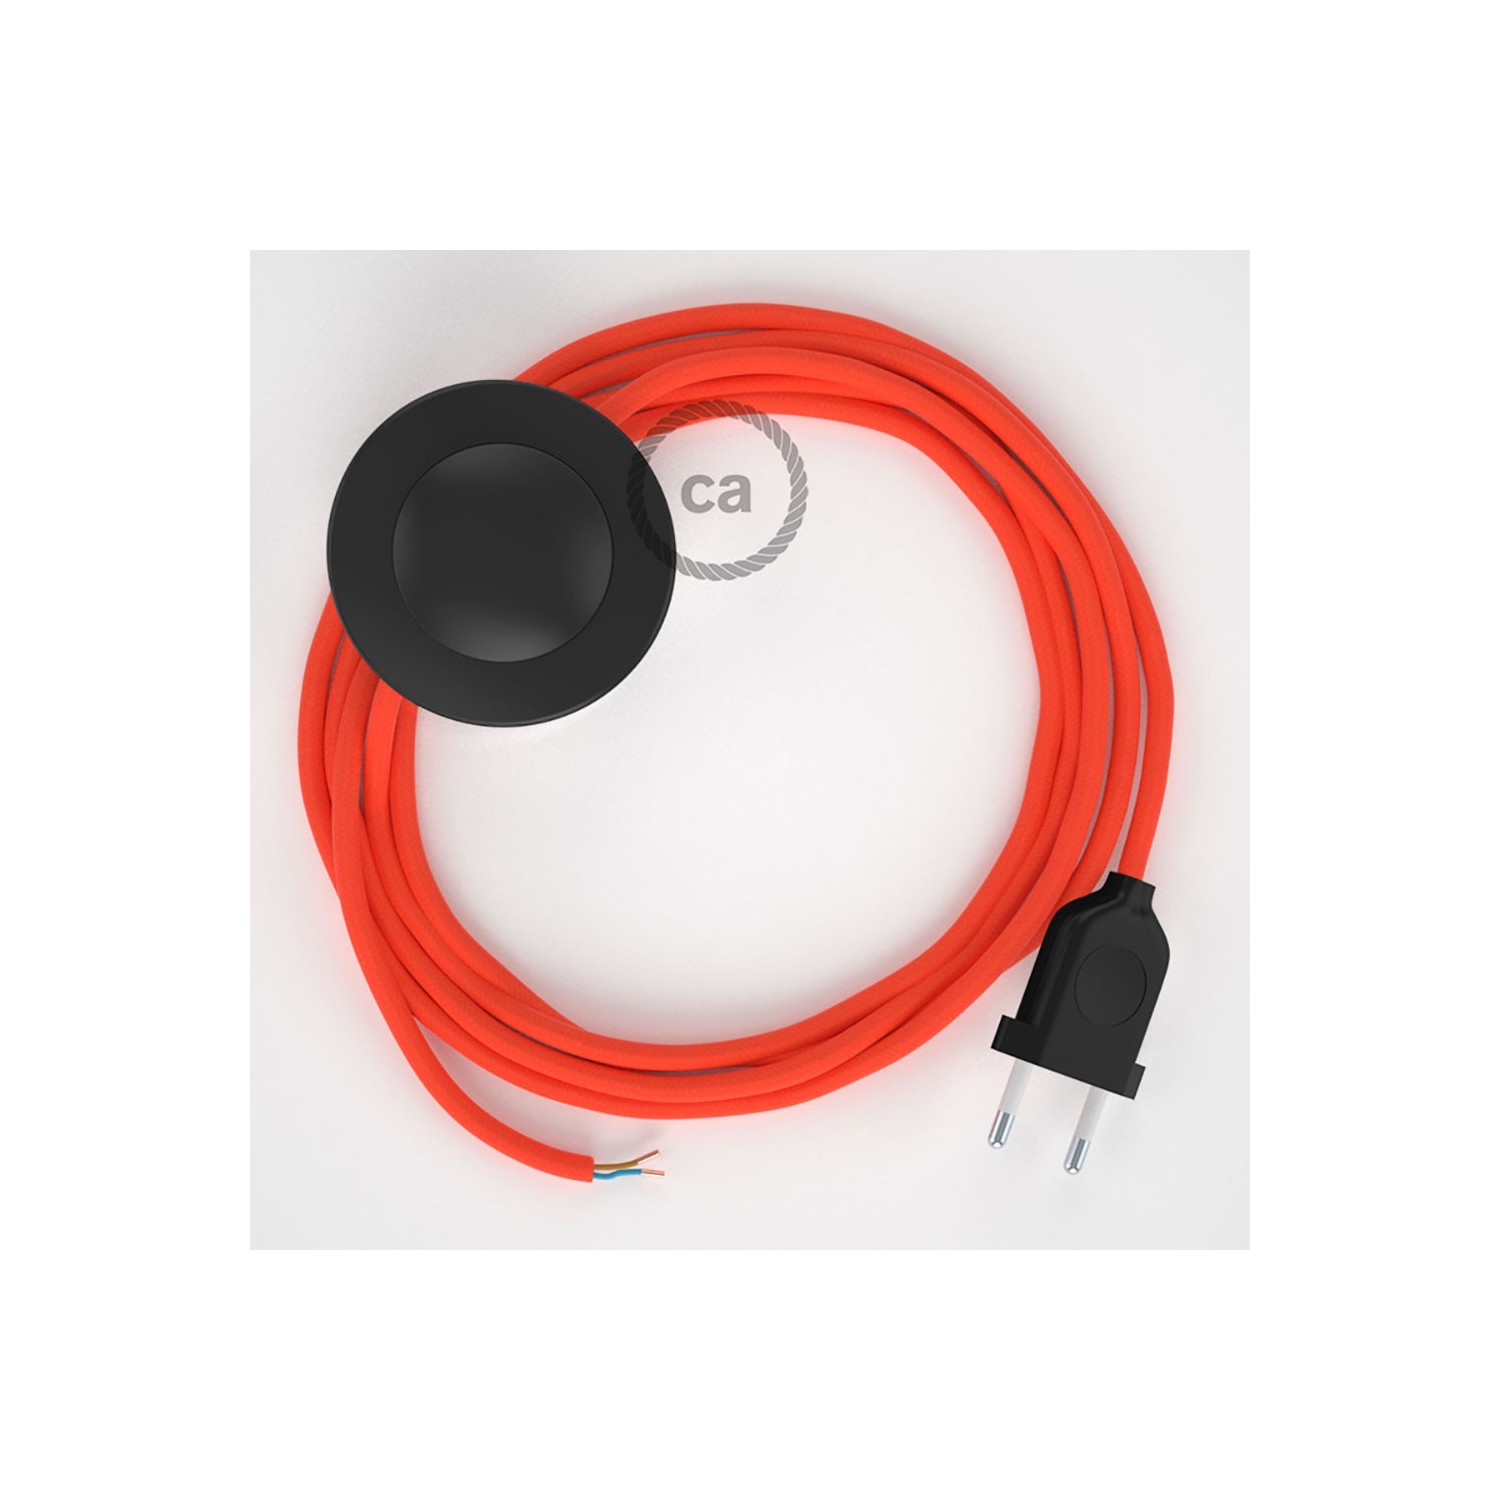 Sladdställ med fotströmbrytare, RF15 Orange Neon Viskos 3 m. Välj färg på strömbrytare och kontakt